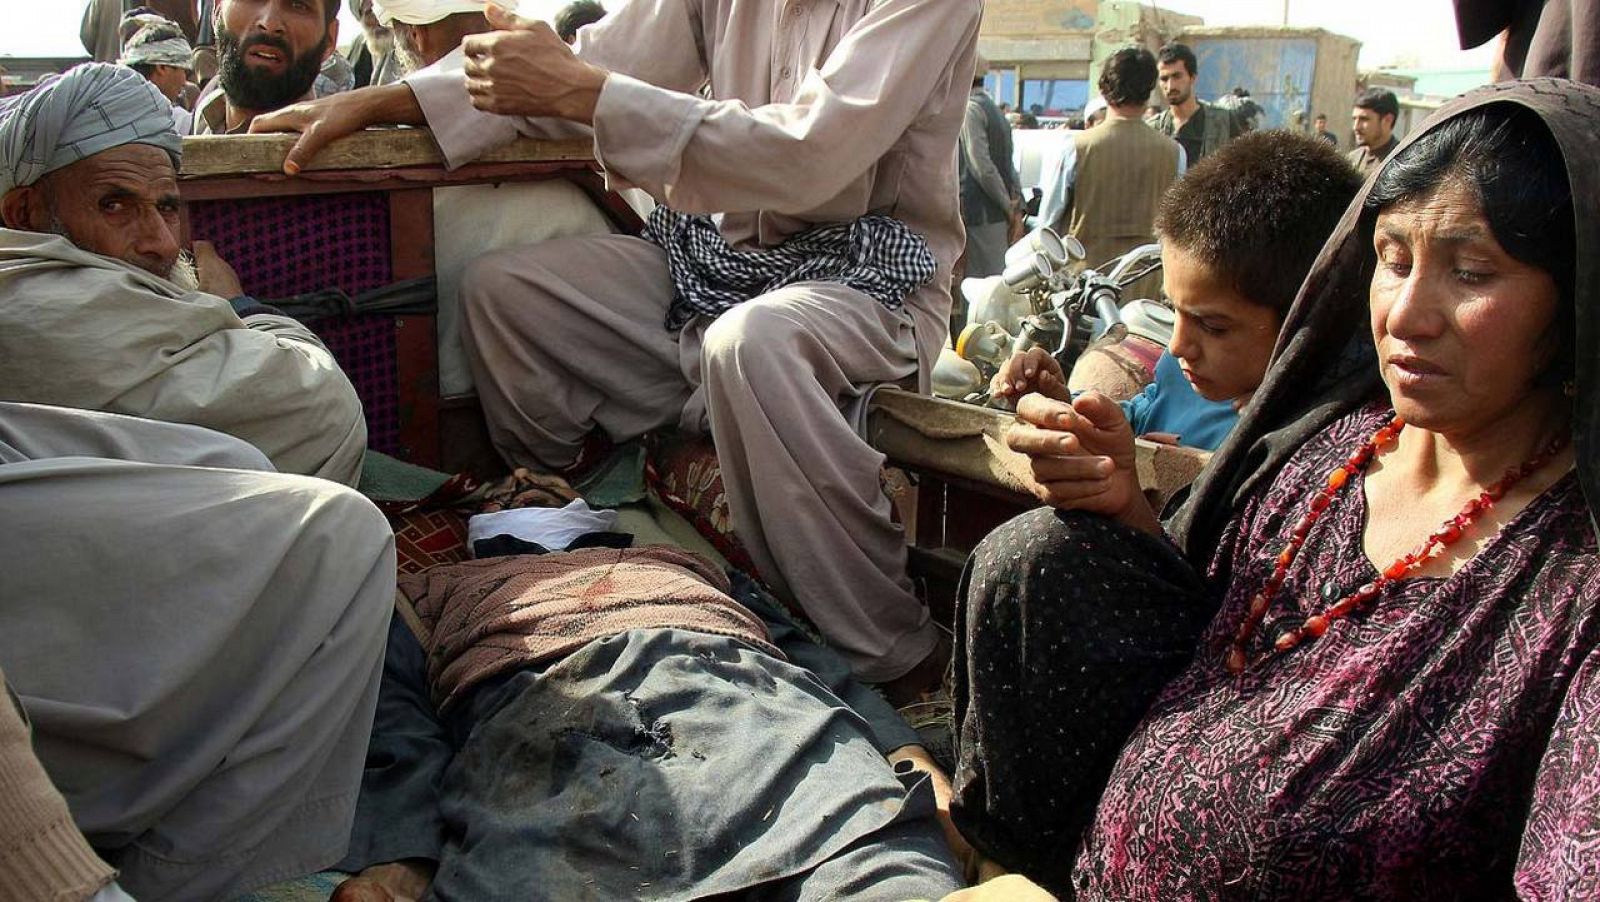 Familiares de un de los fallecidos en combates entre talibanes y miembros de las fuerzas de seguridad afganas en Kunduz, Afganistán, el 3 de noviembre de 2016. REUTERS/Nasir Wakif 